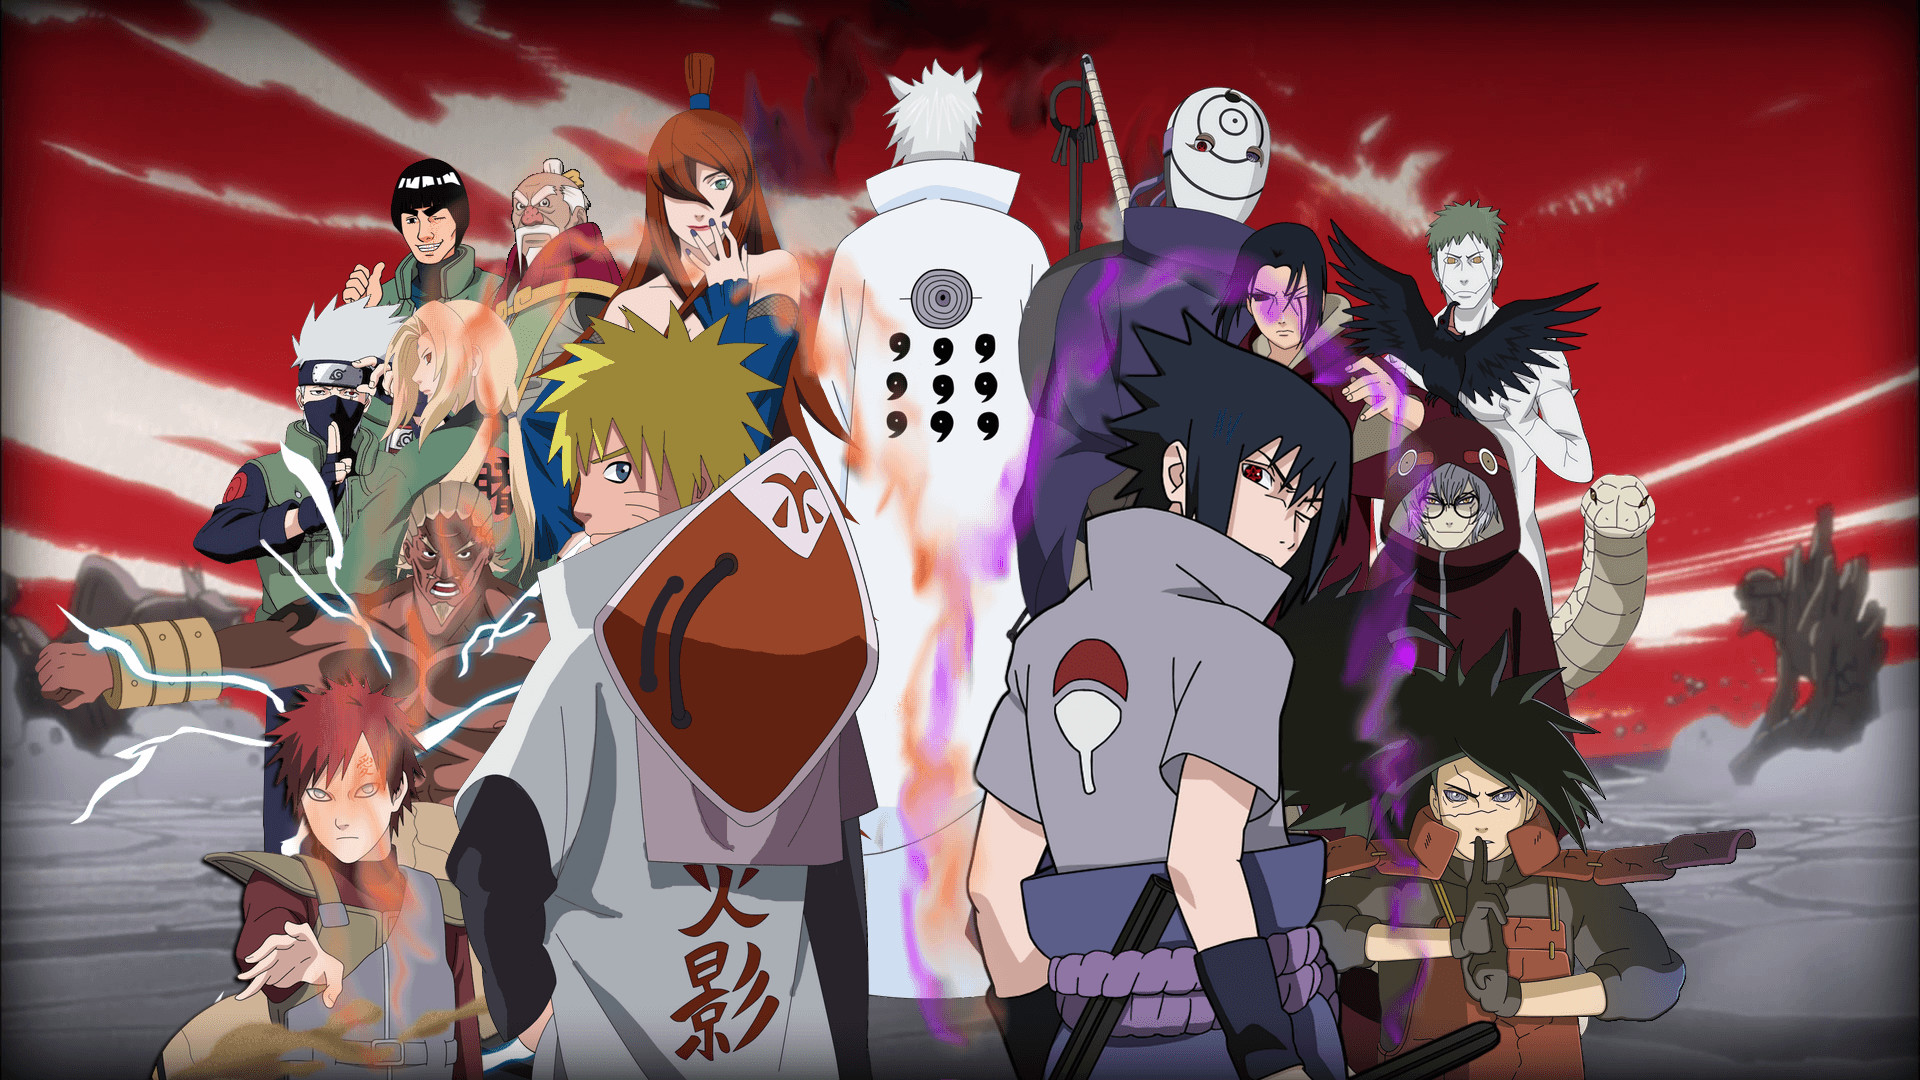 Fonds d’écran Naruto HD - 100 images à télécharger gratuitement